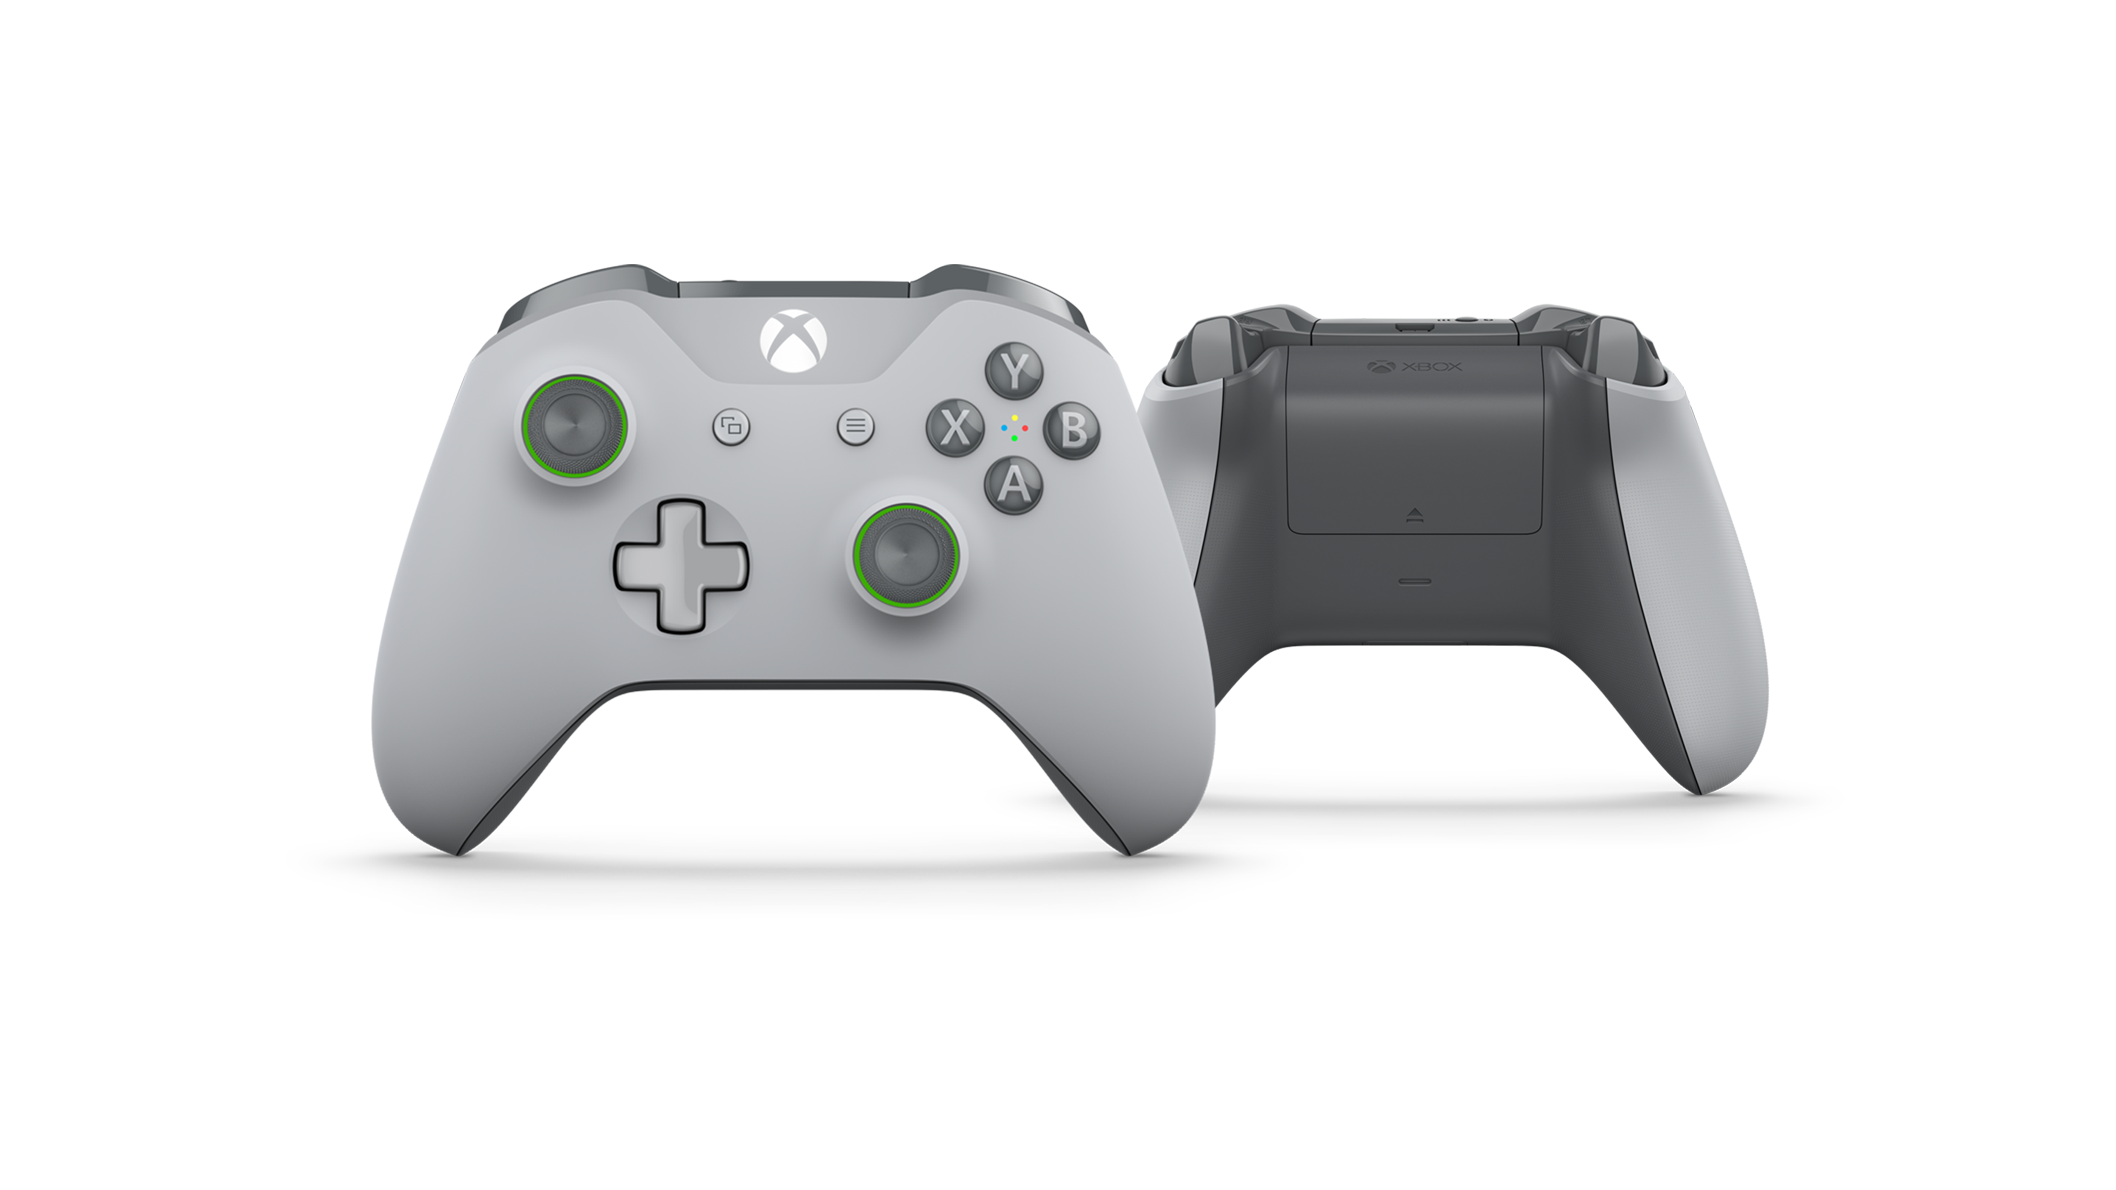 xbox controller gray green